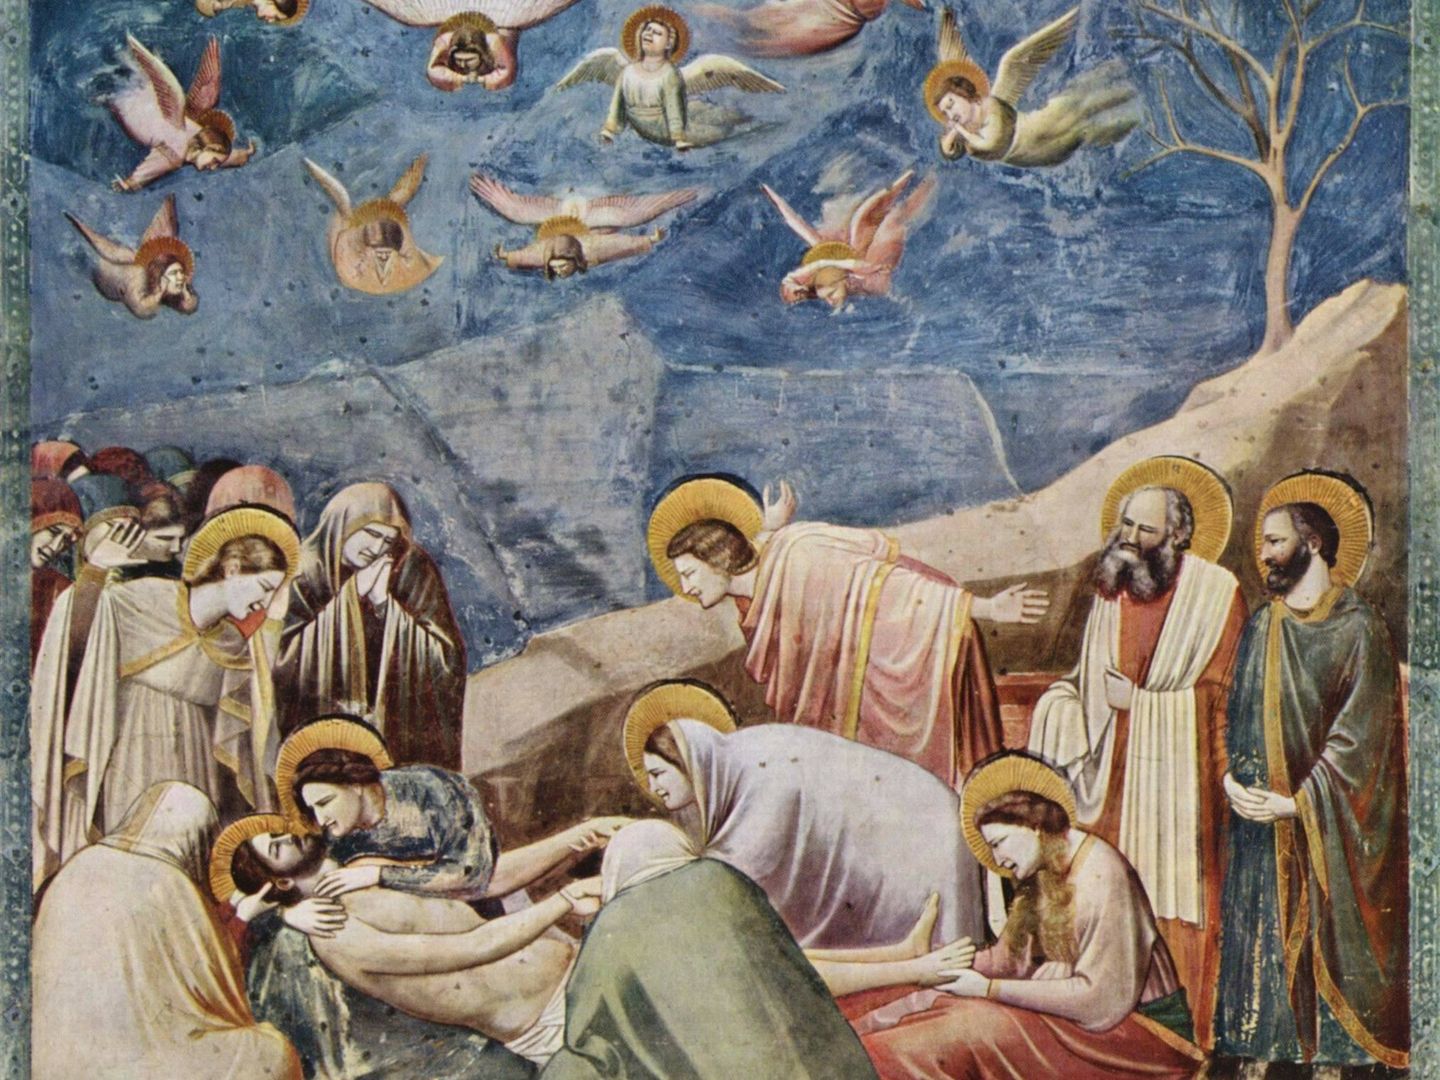 Giotto di Bondone (1304-1306)